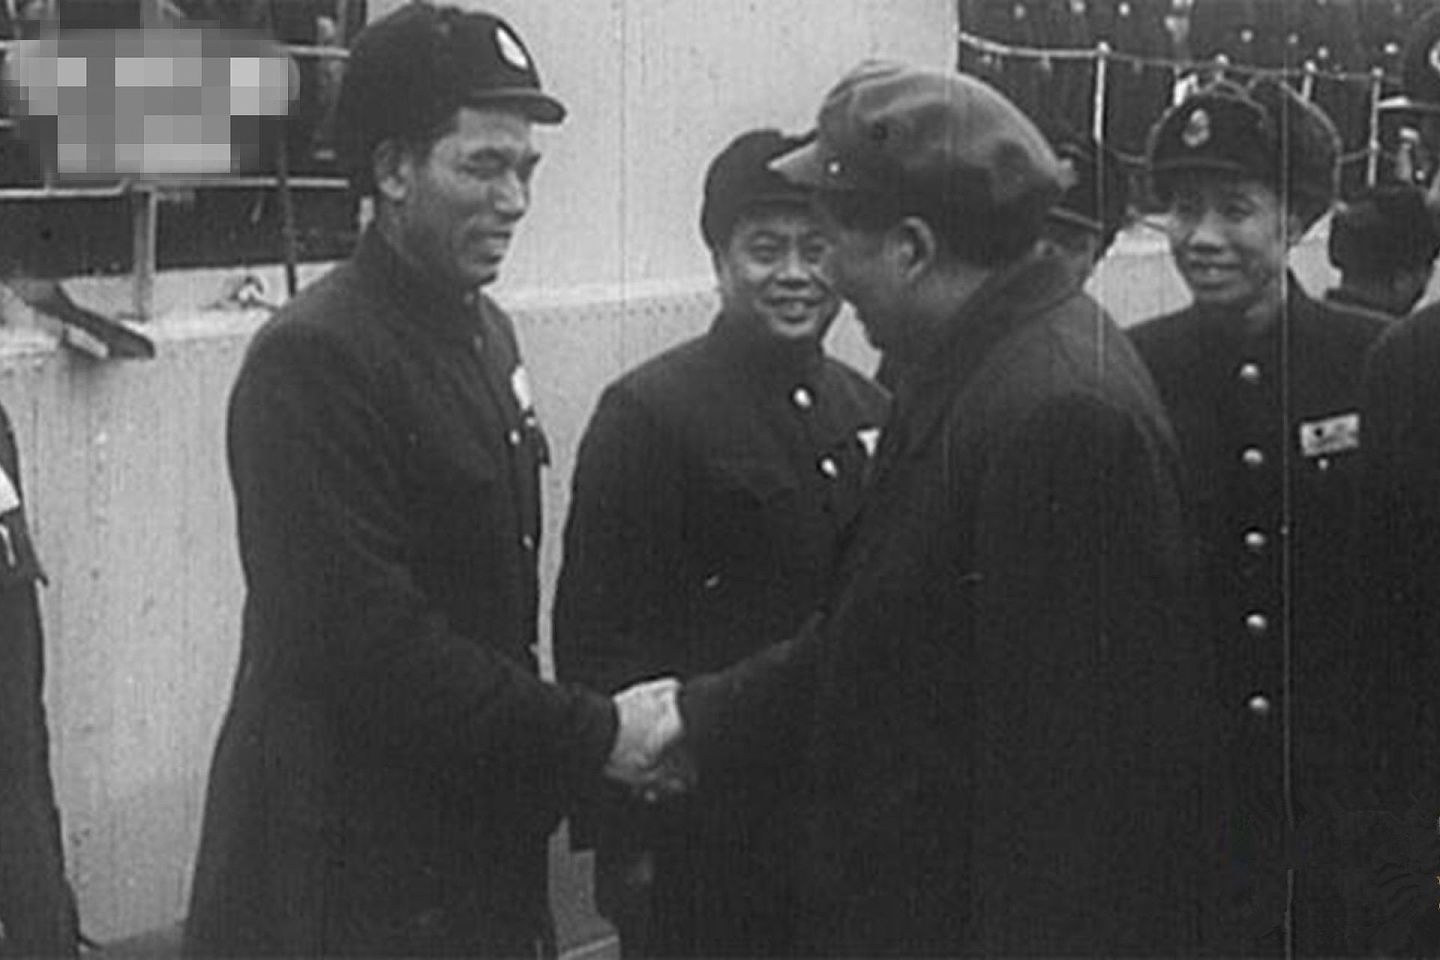 中国央视推出《一九五八炮击金门》纪录片。图为央视放出的有关中共前领导人毛泽东视察海军的照片。（中国央视截图）